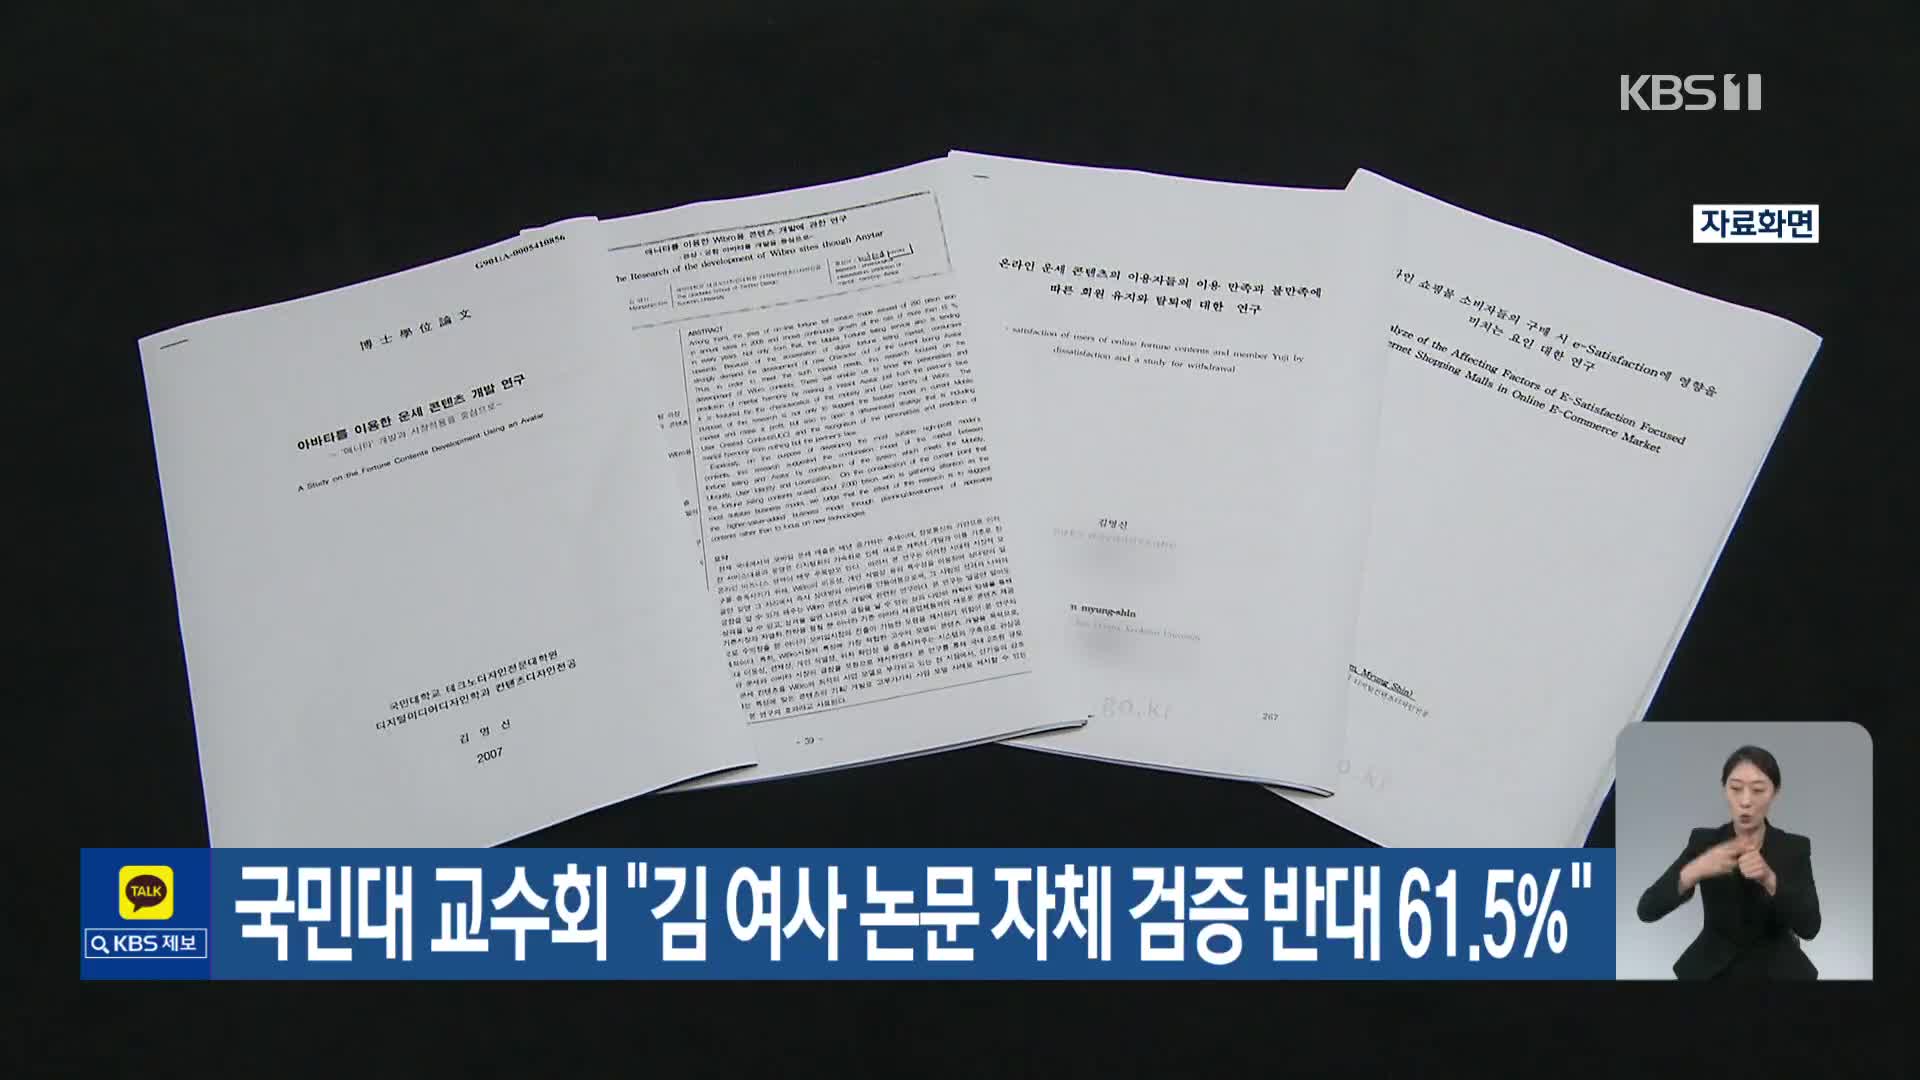 국민대 교수회 “김 여사 논문 자체 검증 반대 61.5%”